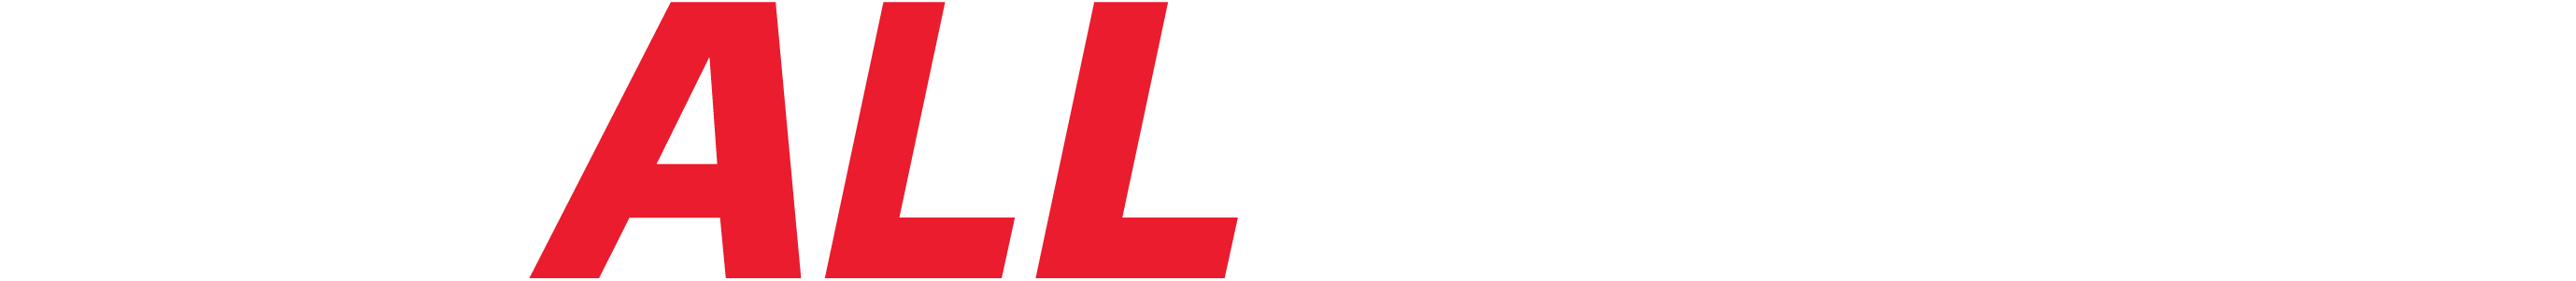 Challenger-logo-Rev